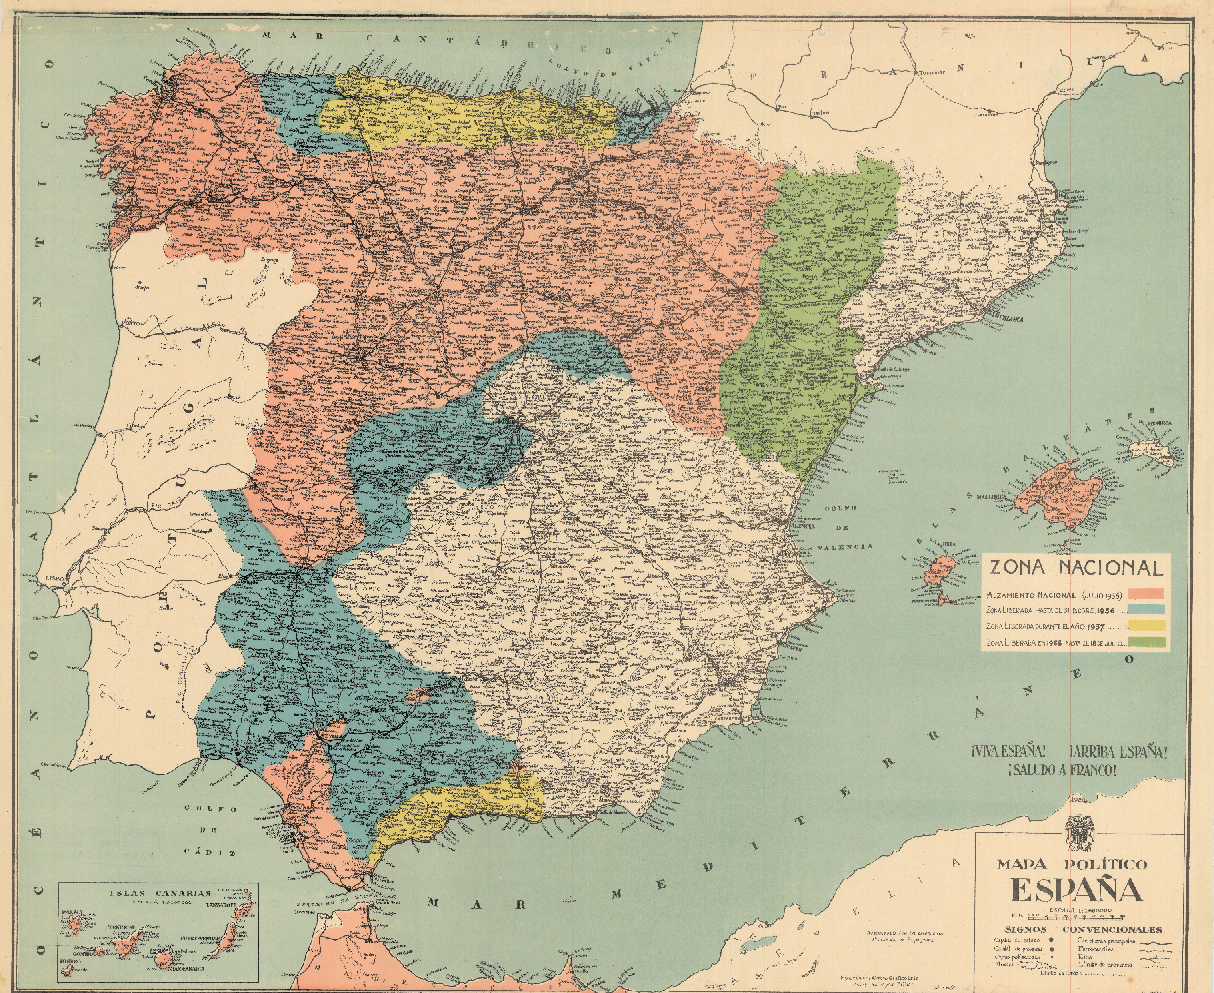 Mapa d'Espanya cartografiat per l'exercit rebel franquista (1938). Font Instituto Geogràfico Nacional